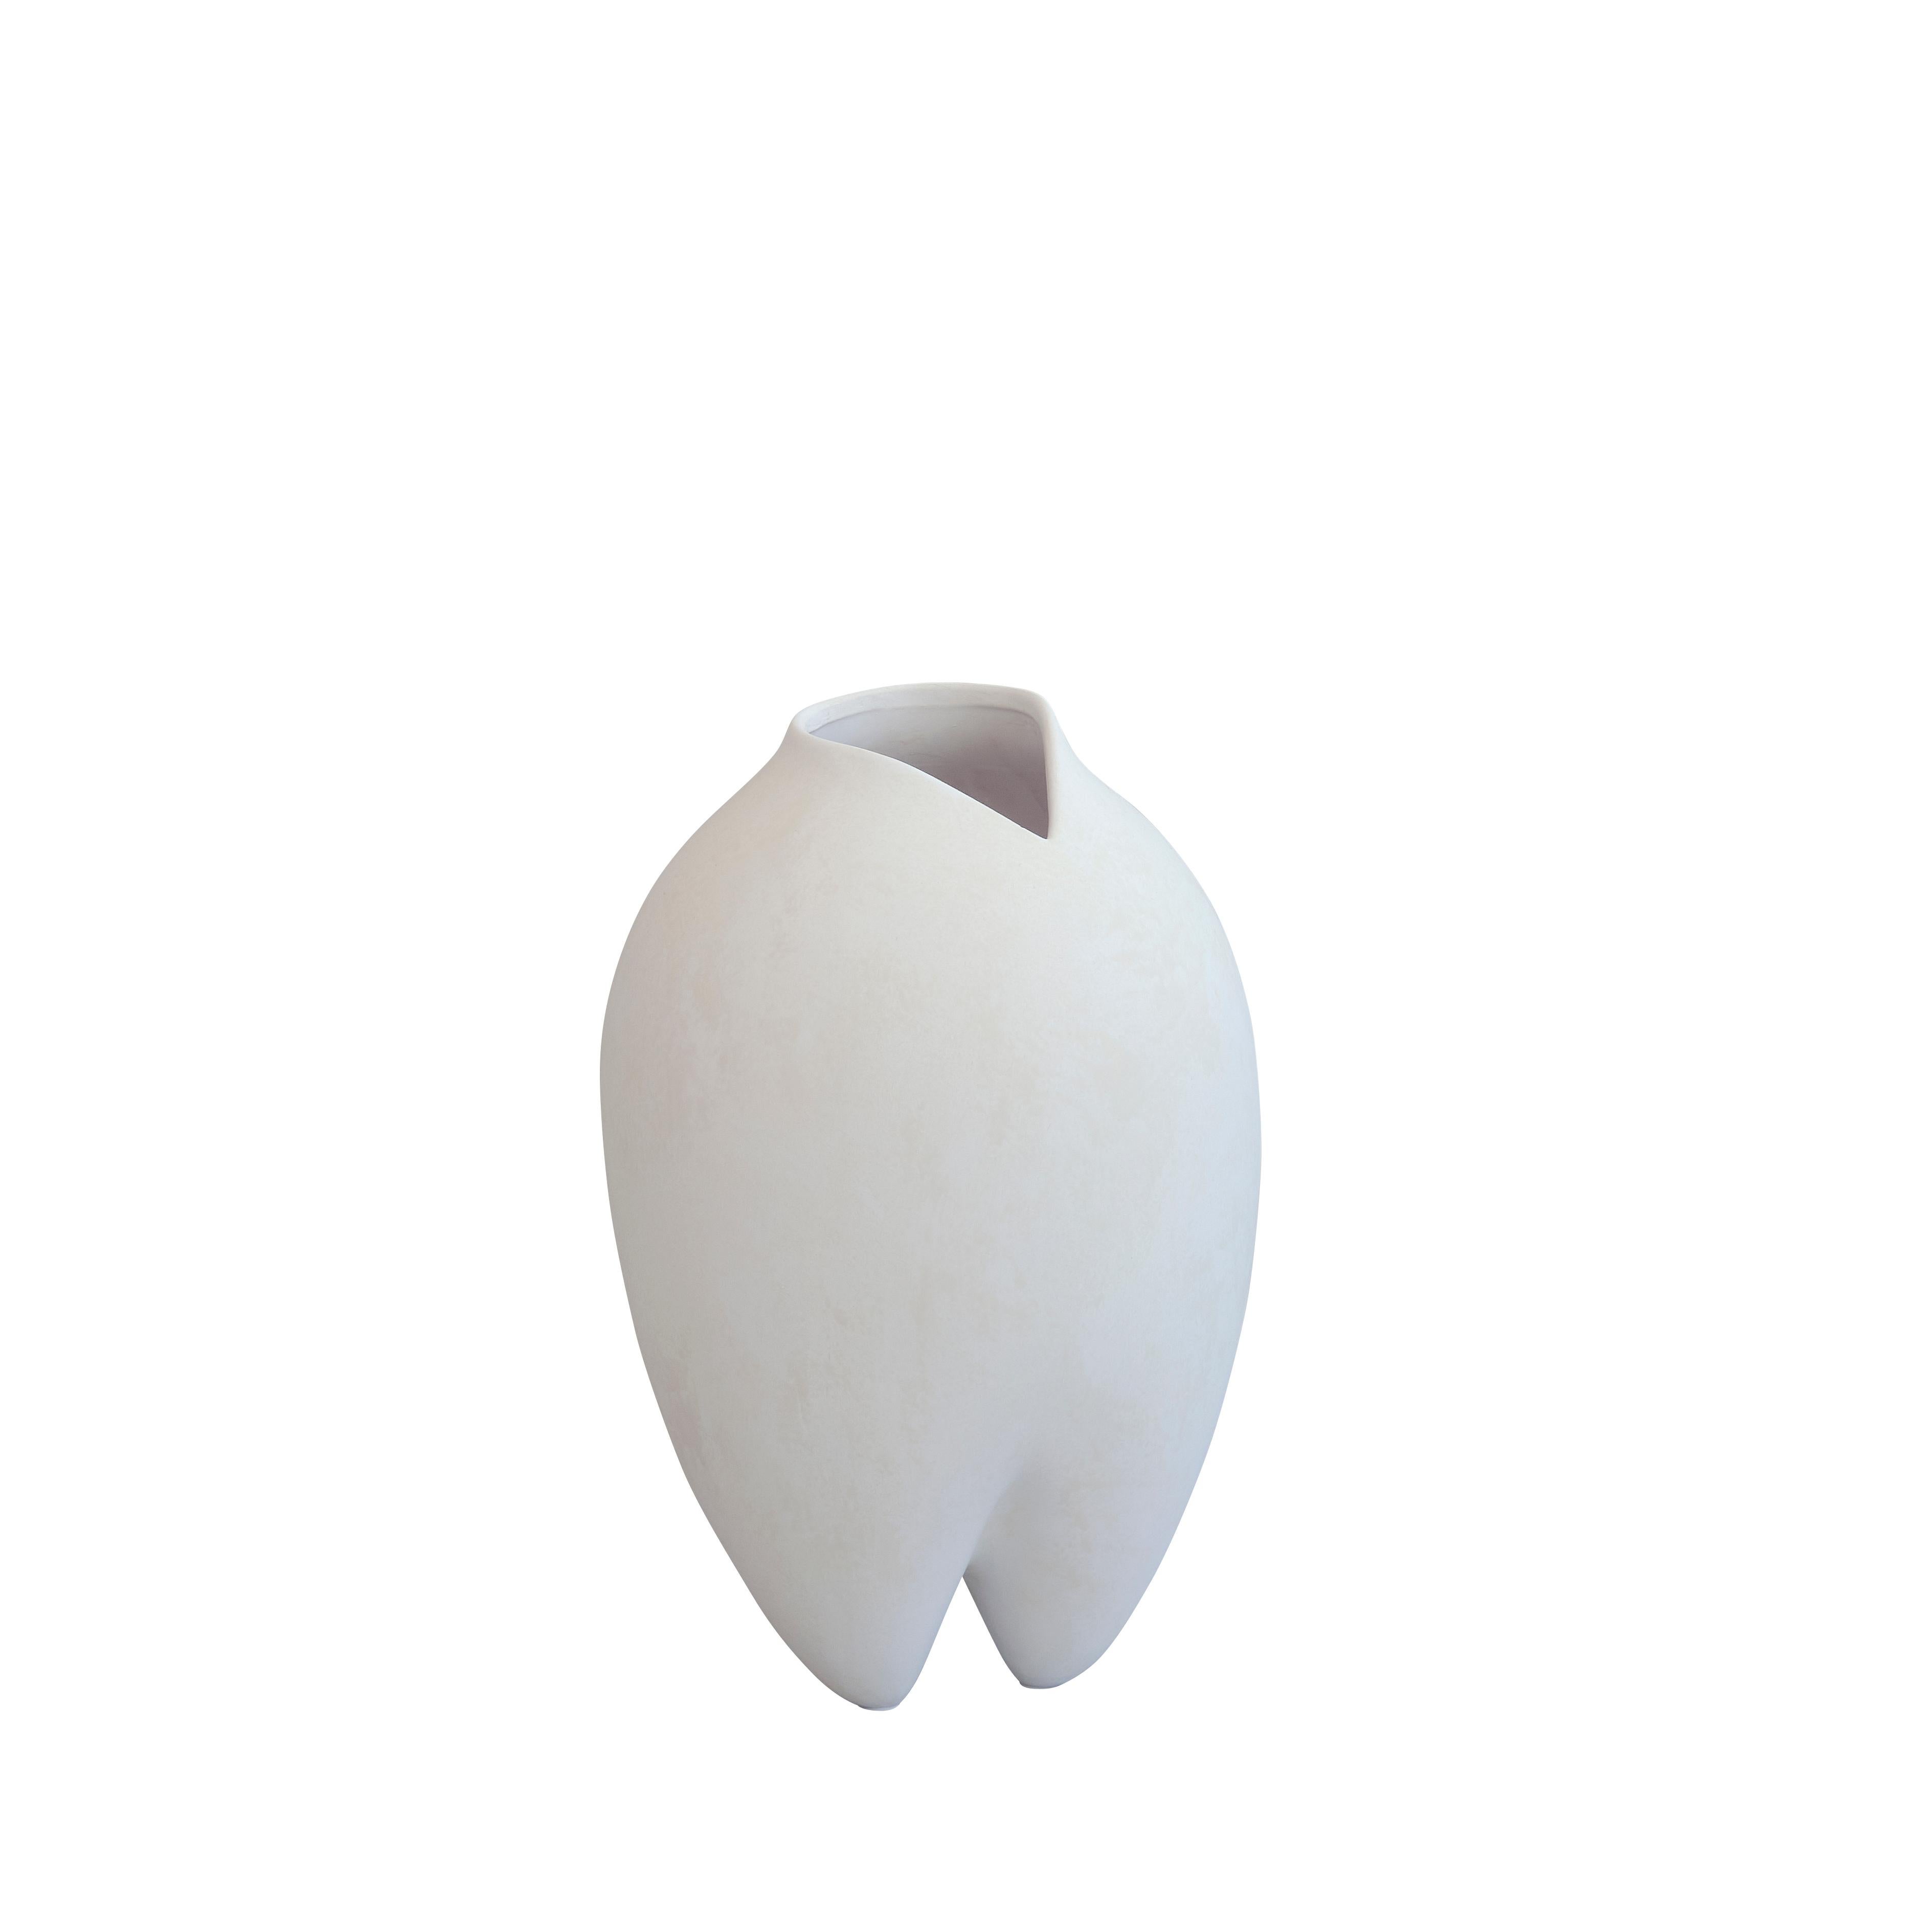 Contemporary Danish design medium size apple shaped vase in white glaze finish.
Interestingly shaped tubular spout opening.
 